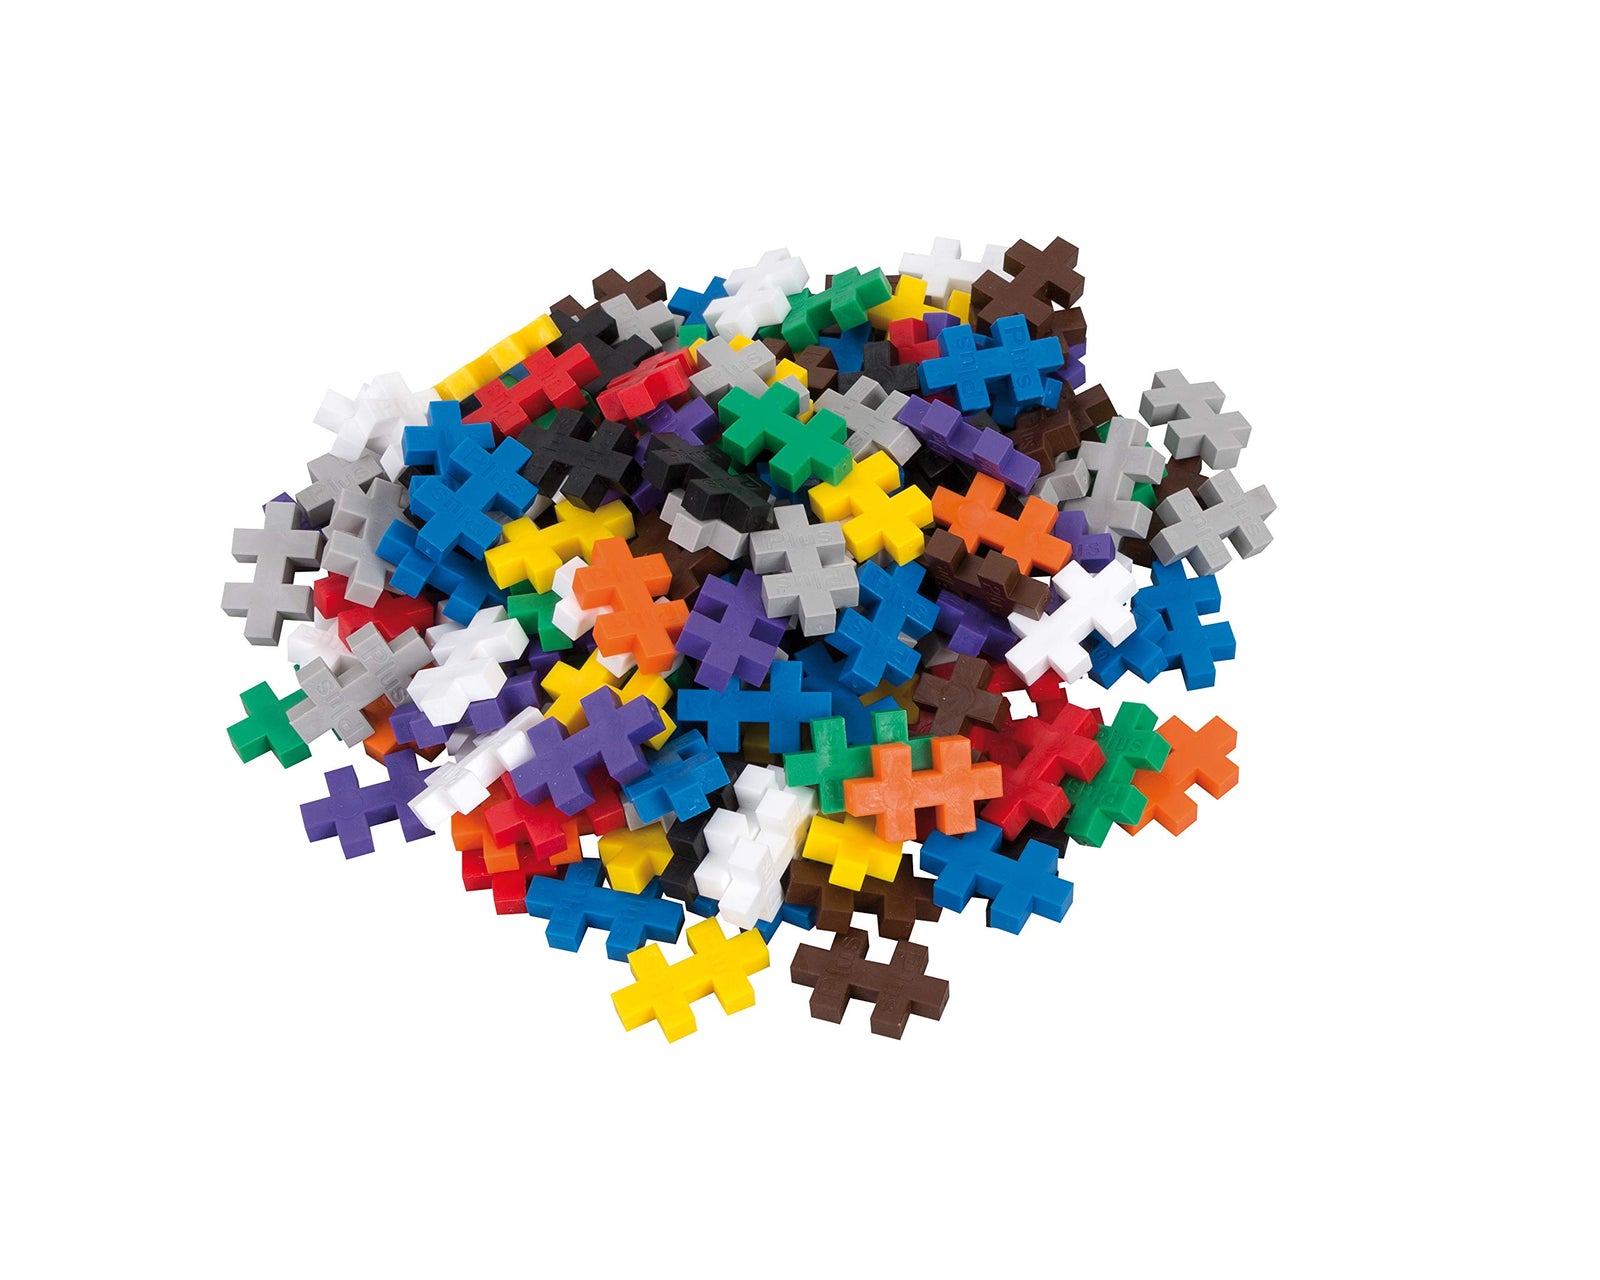 PLUS PLUS - Open Play Set - 600 Piece - Basic Color Mix, Construction Building Stem Toy, Interlocking Mini Puzzle Blocks for Kids